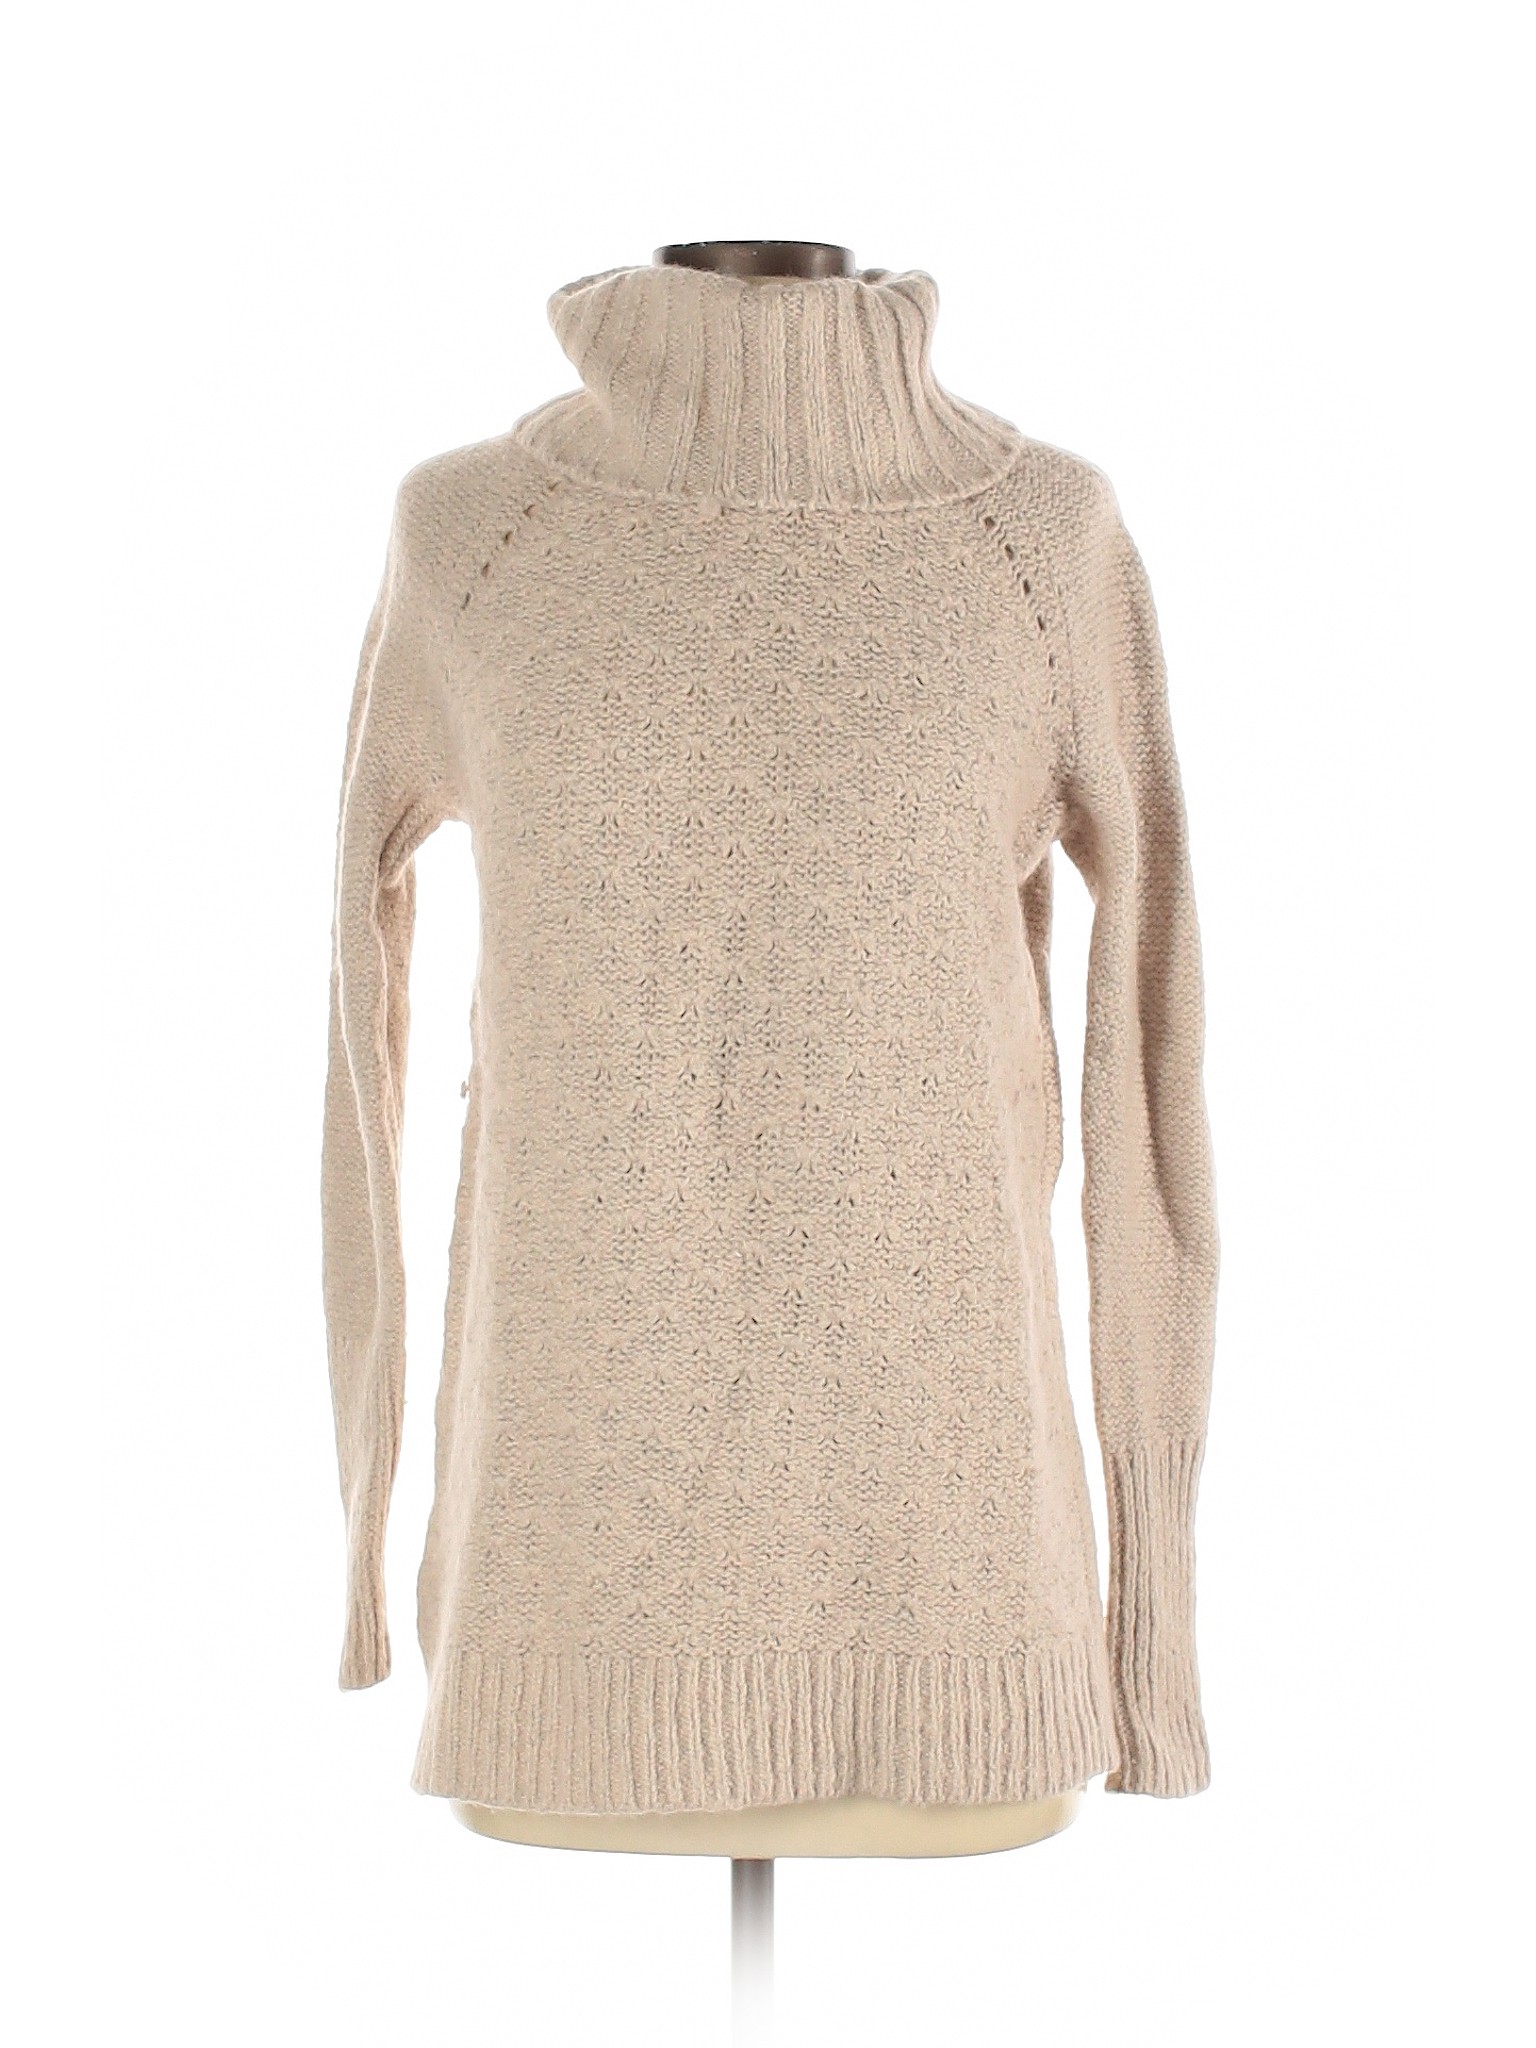 Ann Taylor LOFT Women Brown Turtleneck Sweater S | eBay